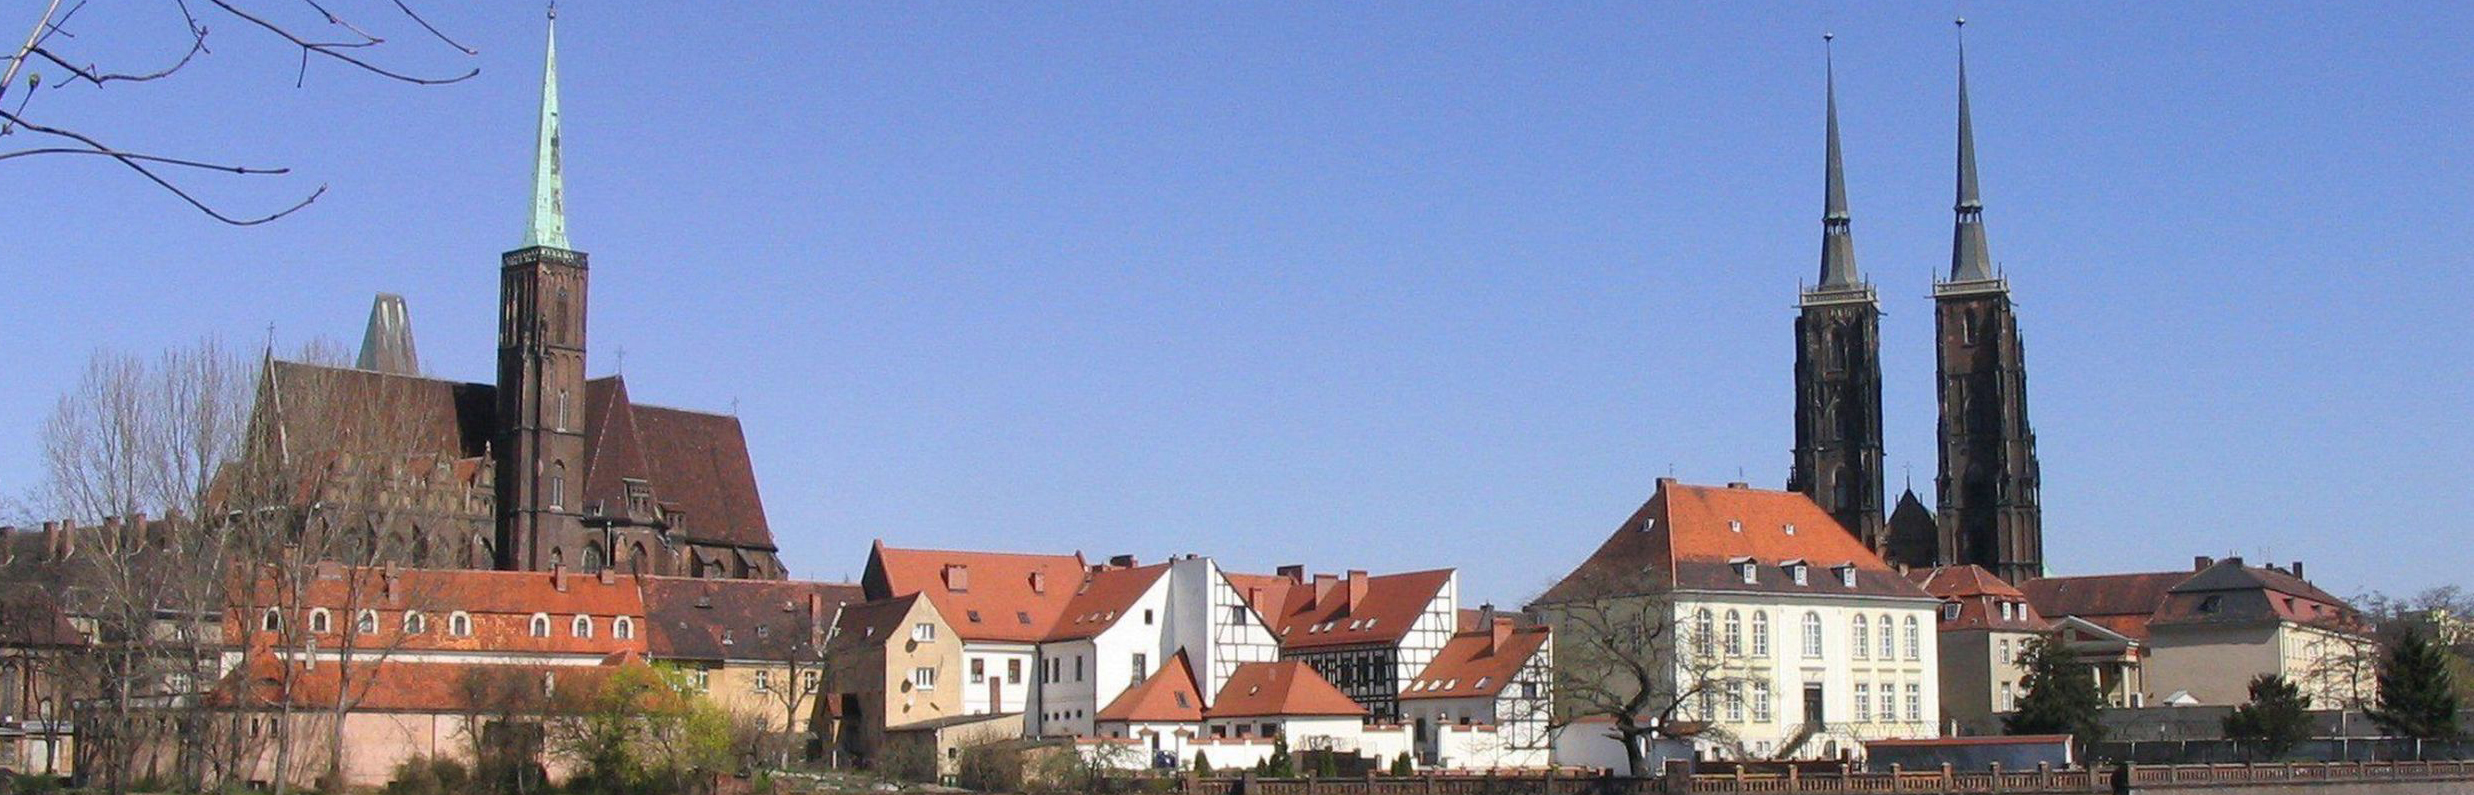 Blick auf die Dominsel in Breslau